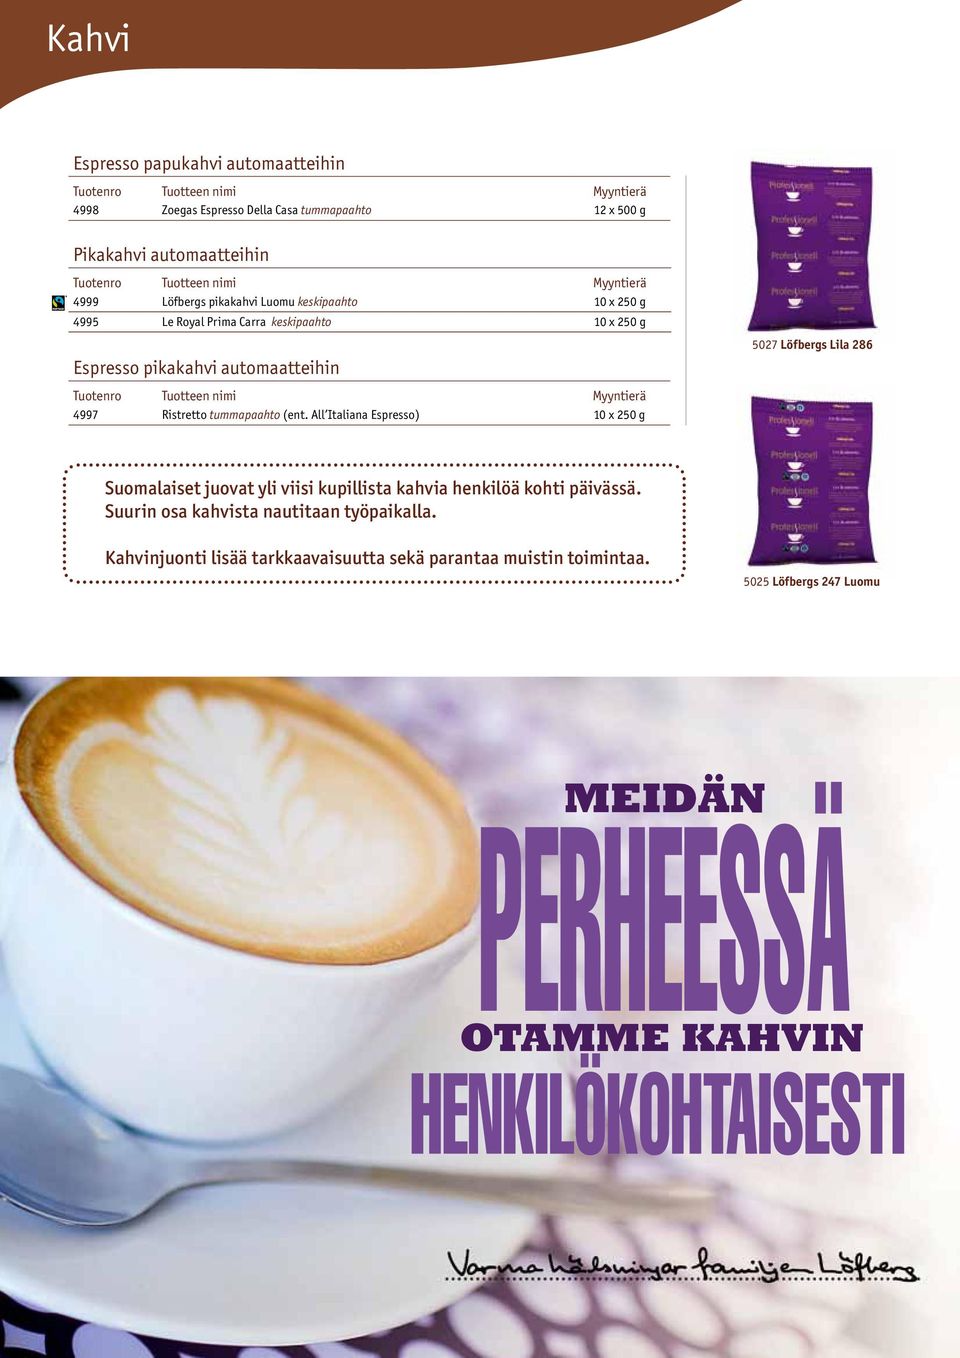 All Italiana Espresso) 10 x 250 g 5027 Löfbergs Lila 286 Suomalaiset juovat yli viisi kupillista kahvia henkilöä kohti päivässä.